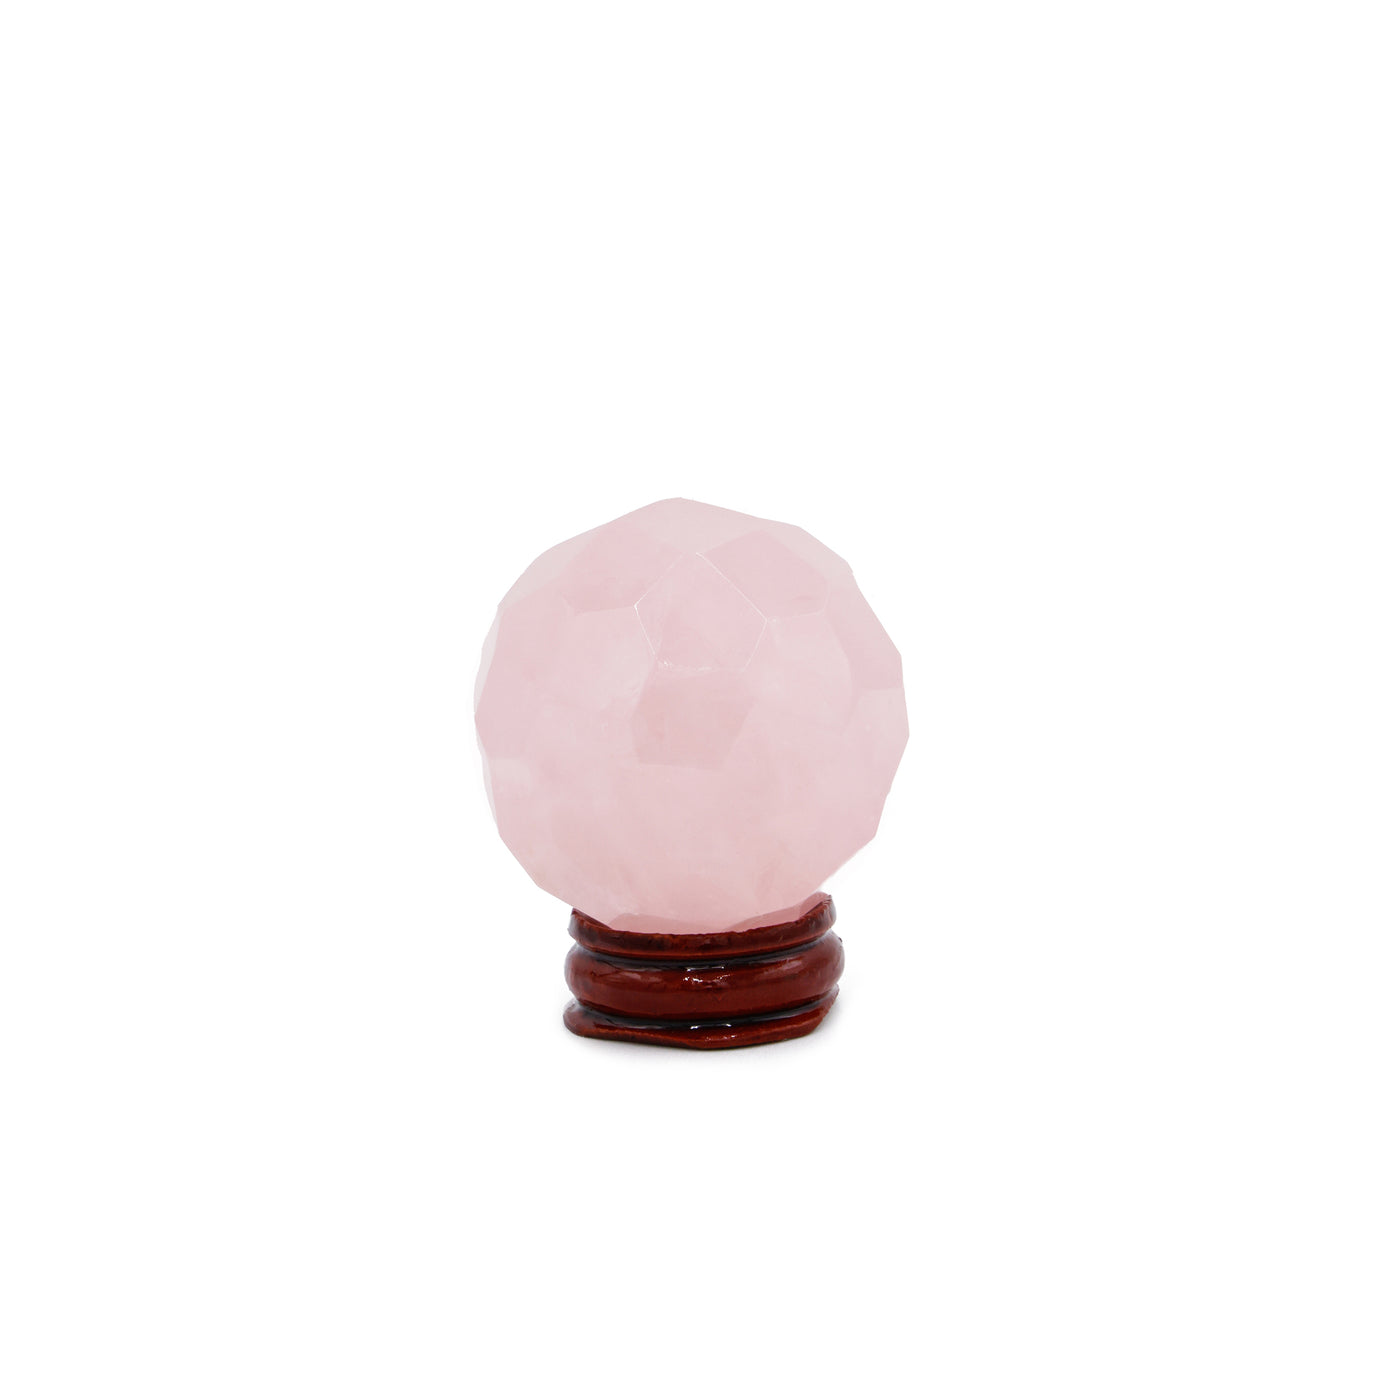 Faceted sphere: Rose quartz